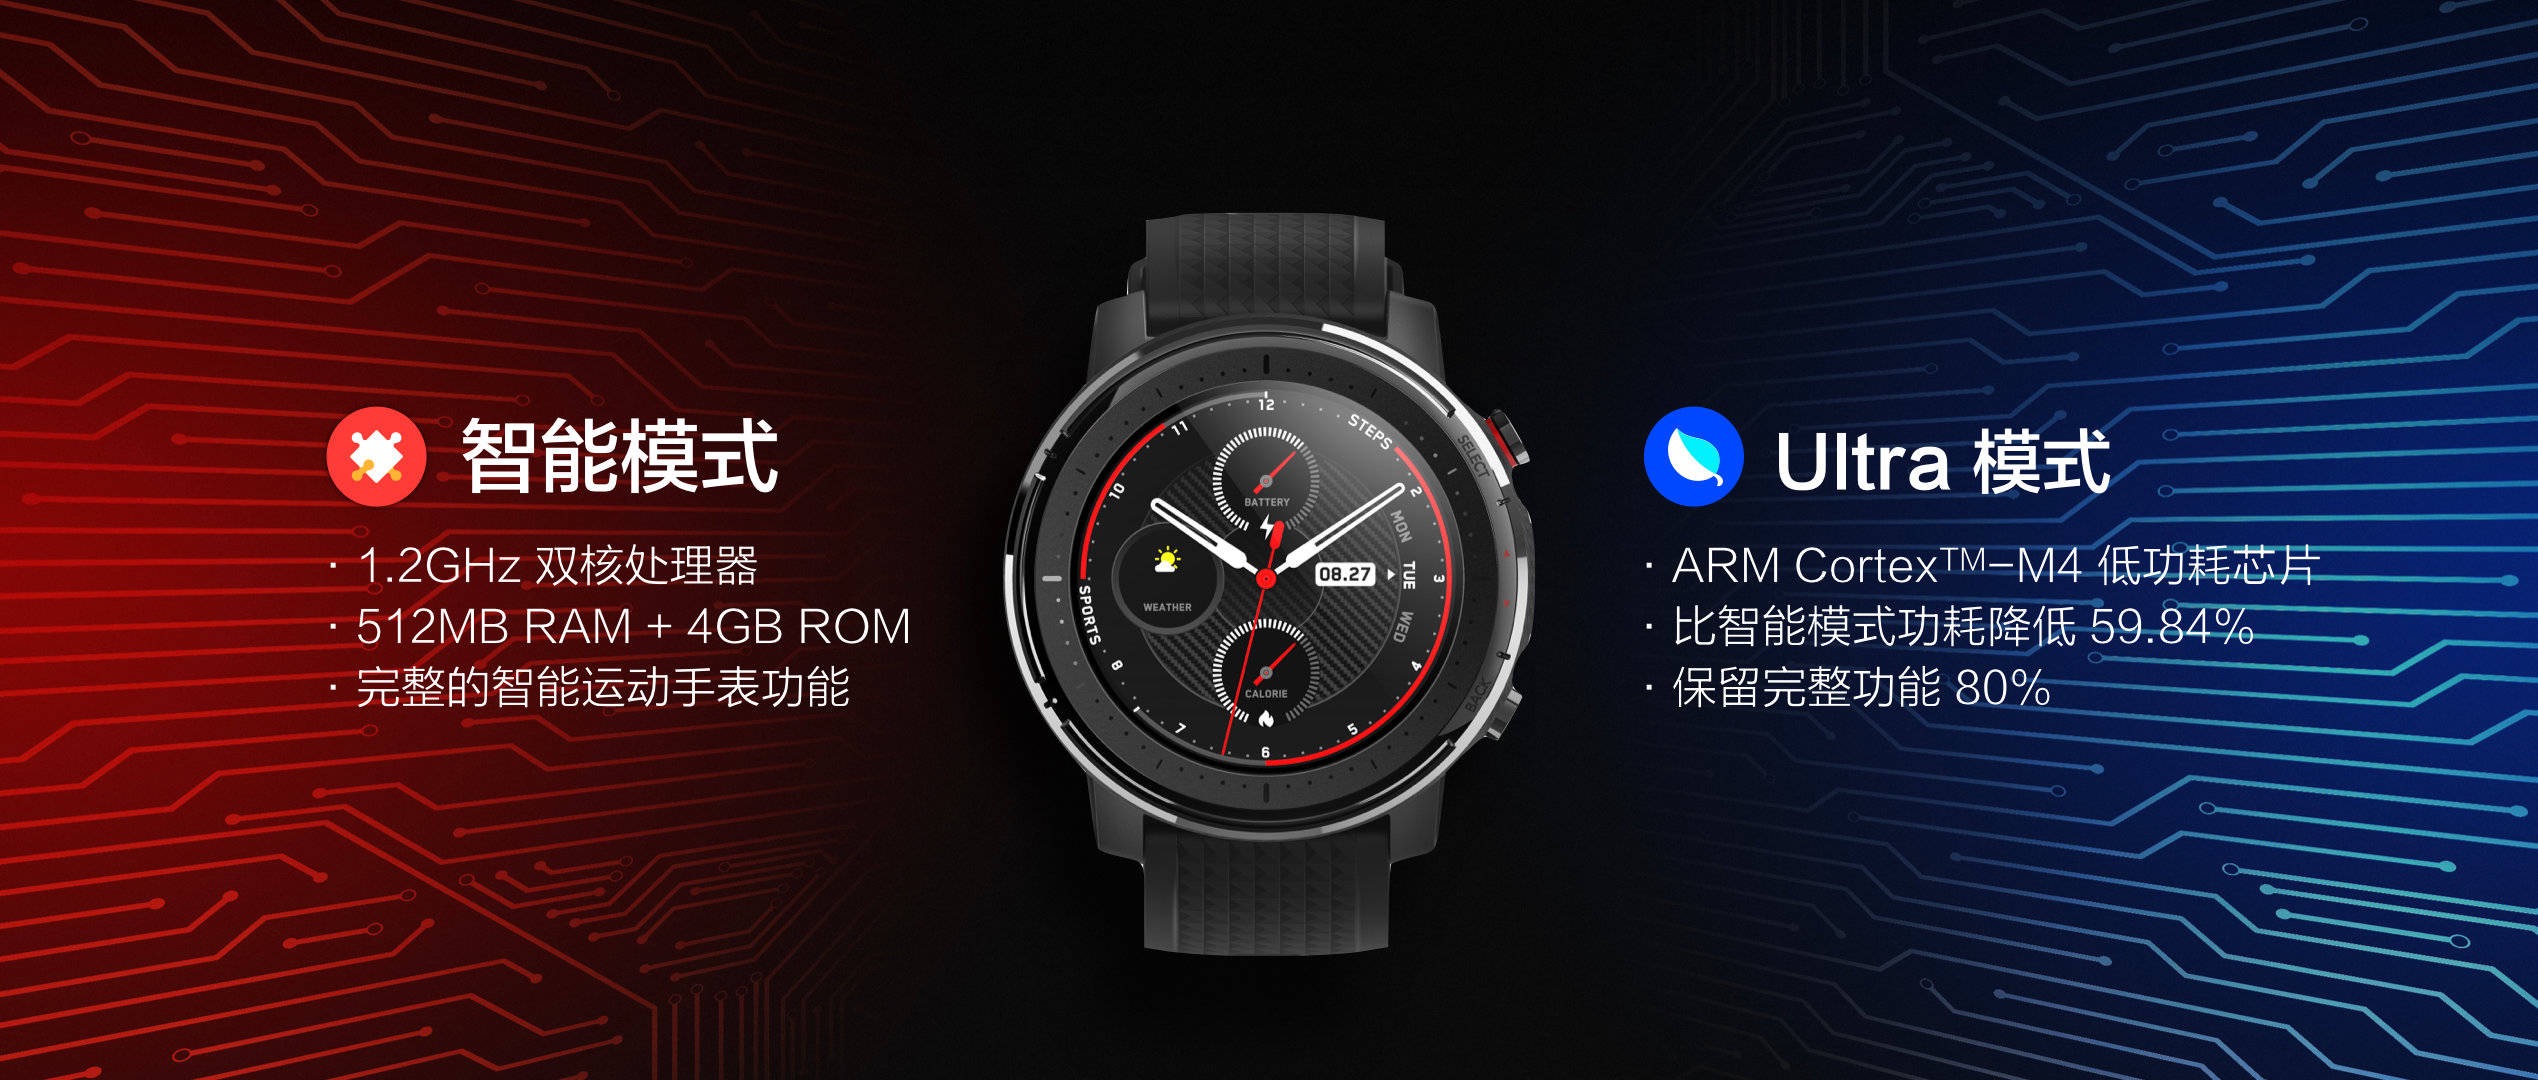 Reloj deportivo inteligente Amazfit 3, características, precio y especificaciones. Últimas noticias de Xiaomi